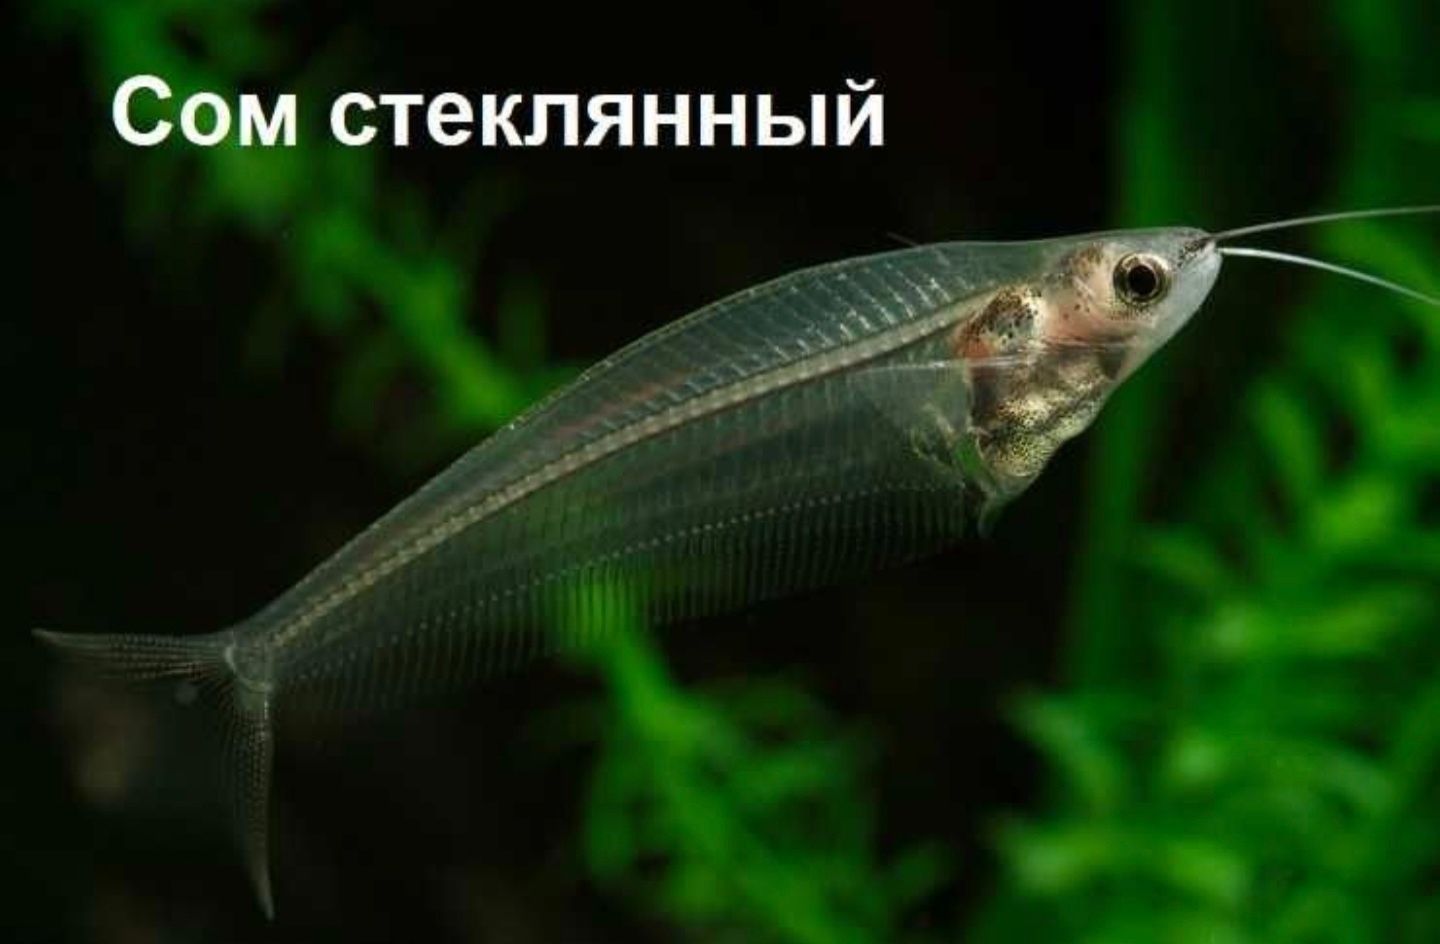 Снится прозрачная рыба. Стеклянный сомик аквариумная рыбка. Стеклянный индийский сомик. Индийский стеклянный сом (Kryptopterus bicirrhis). Сом стеклянный индийский двуусый.